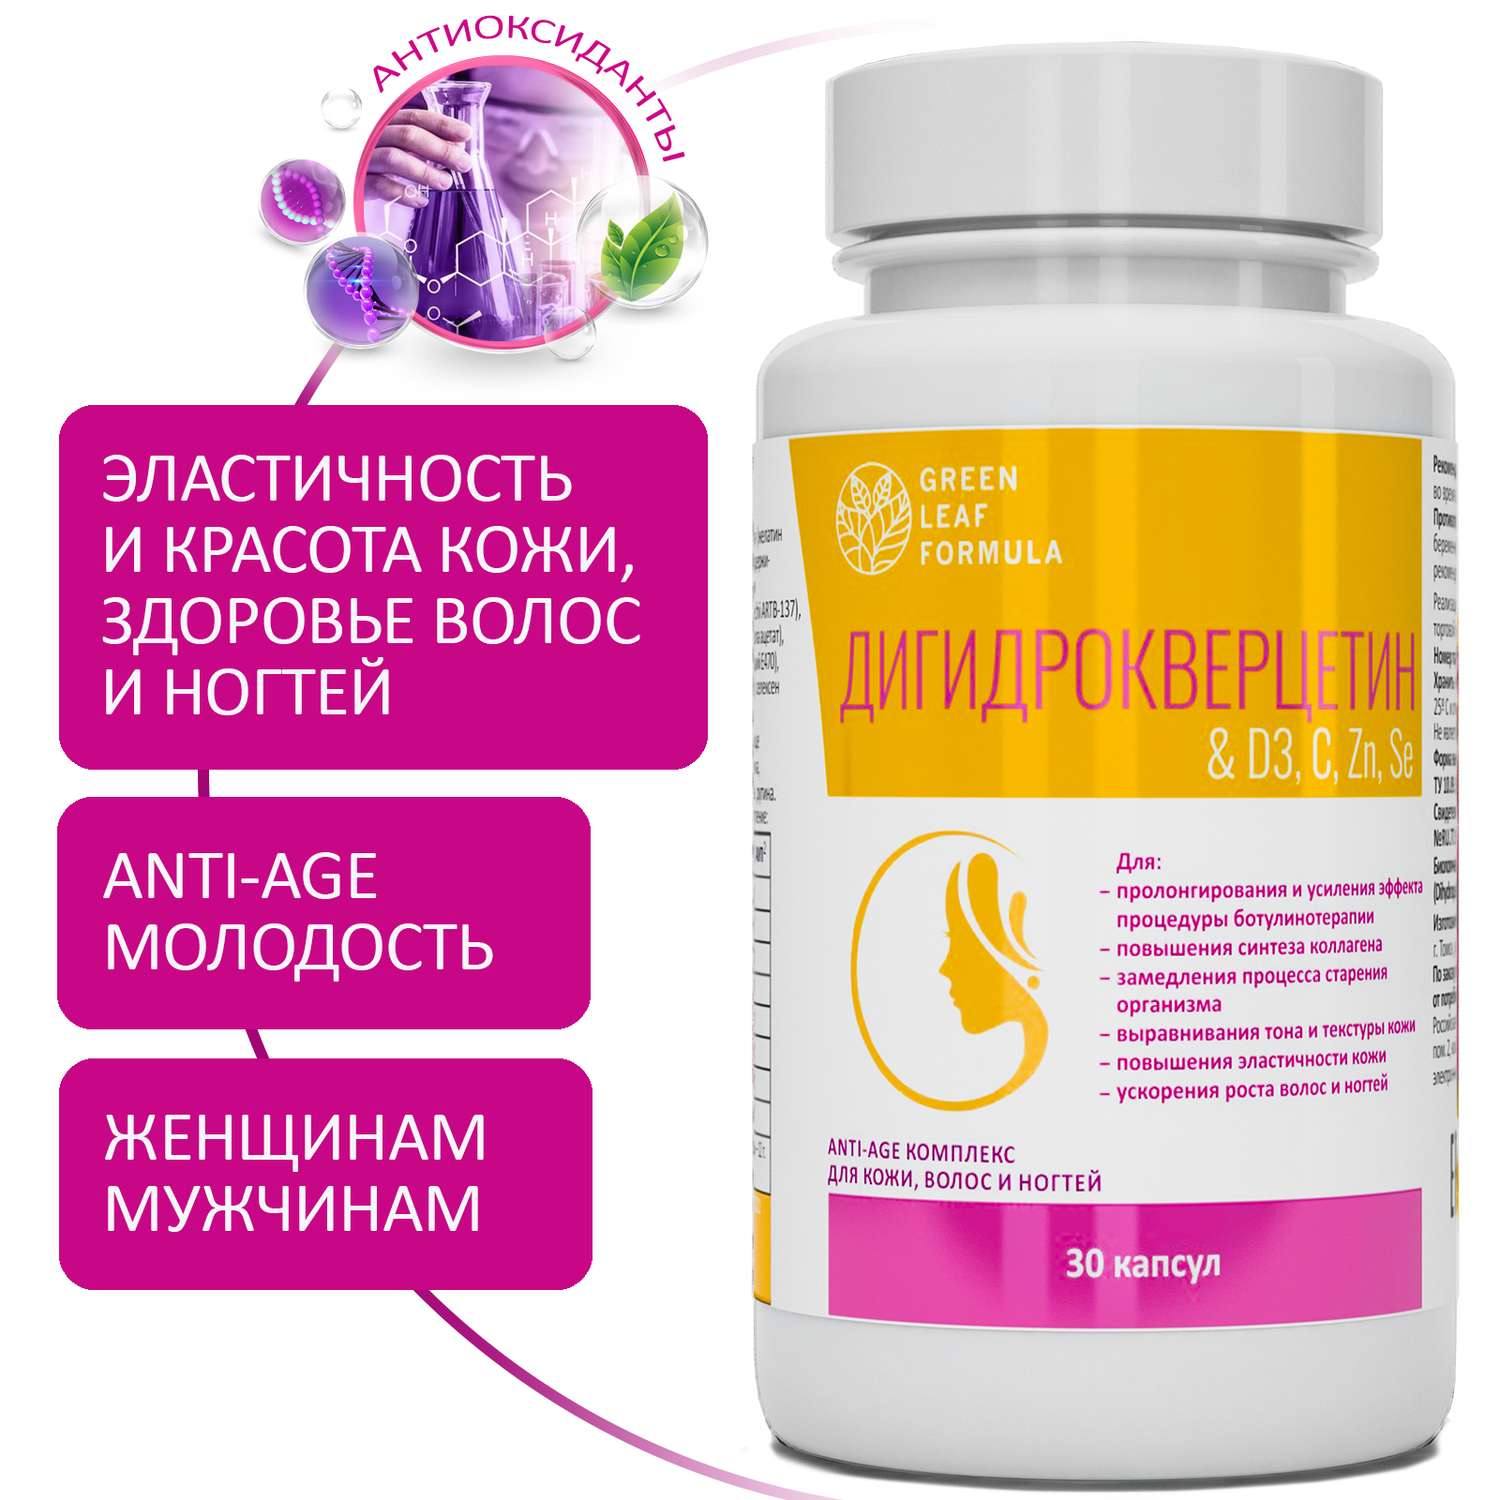 Дигидрокверцетин Green Leaf Formula антиоксиданты комплекс витамины для кожи волос и ногтей anti-age - фото 1